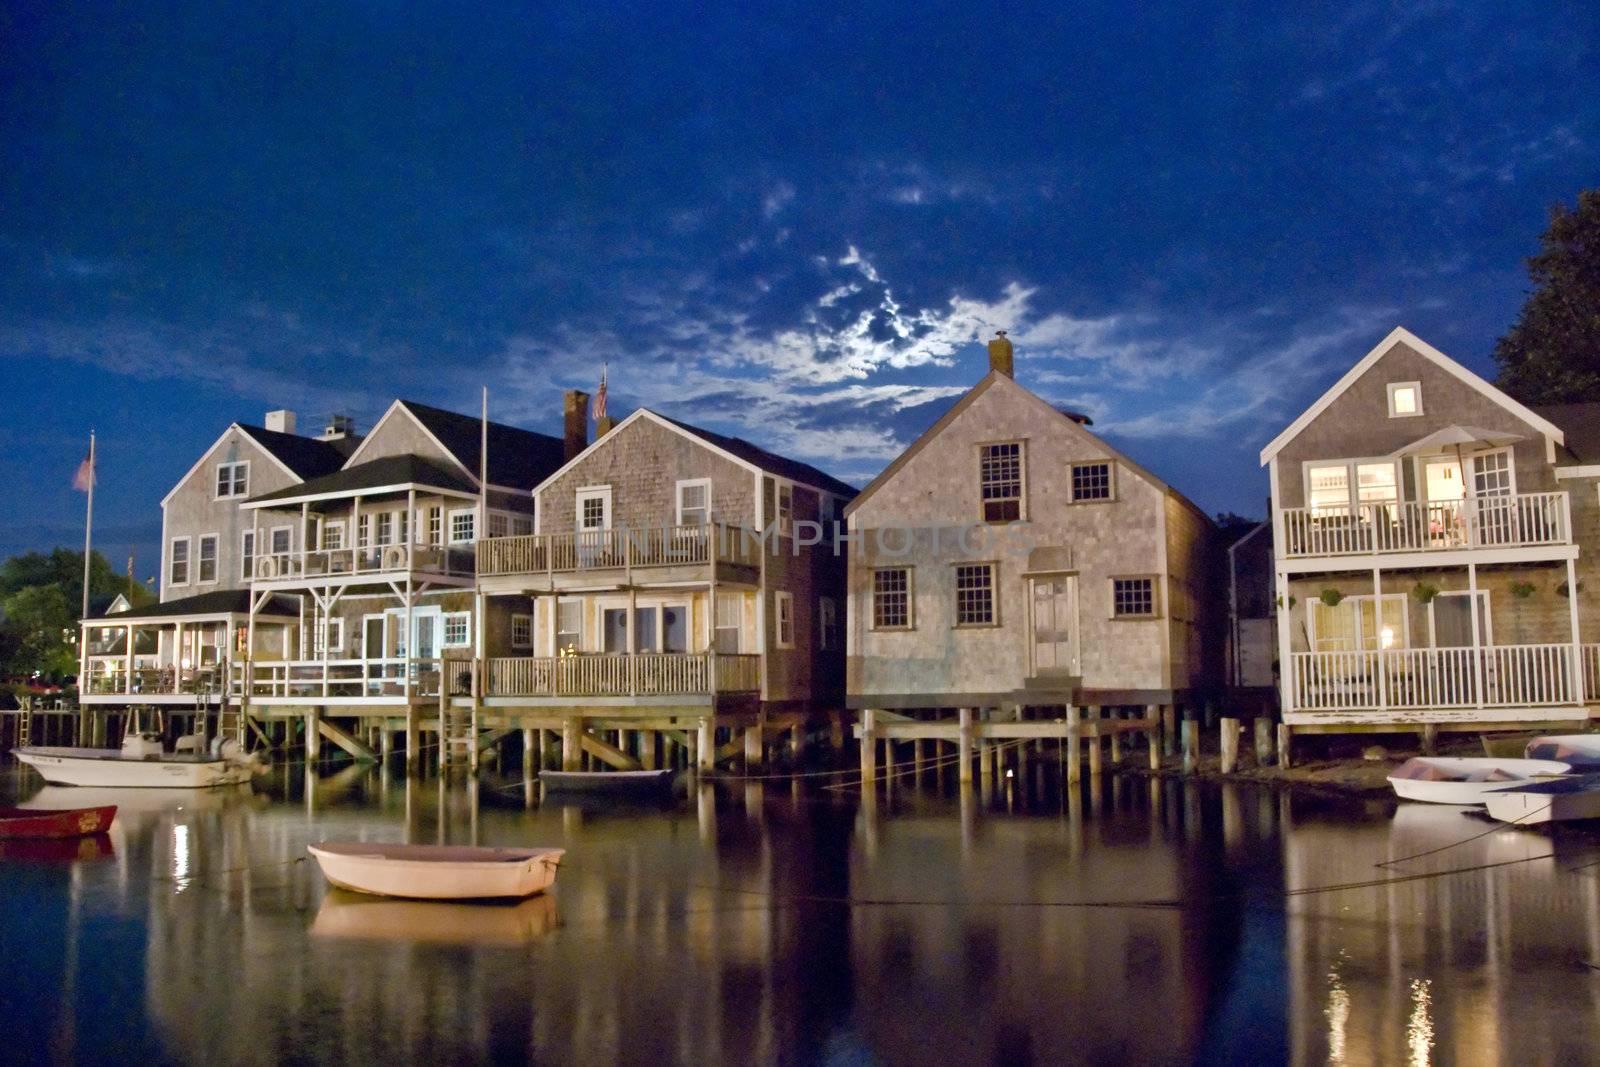 Group of Houses in Nantucket, Massachusetts